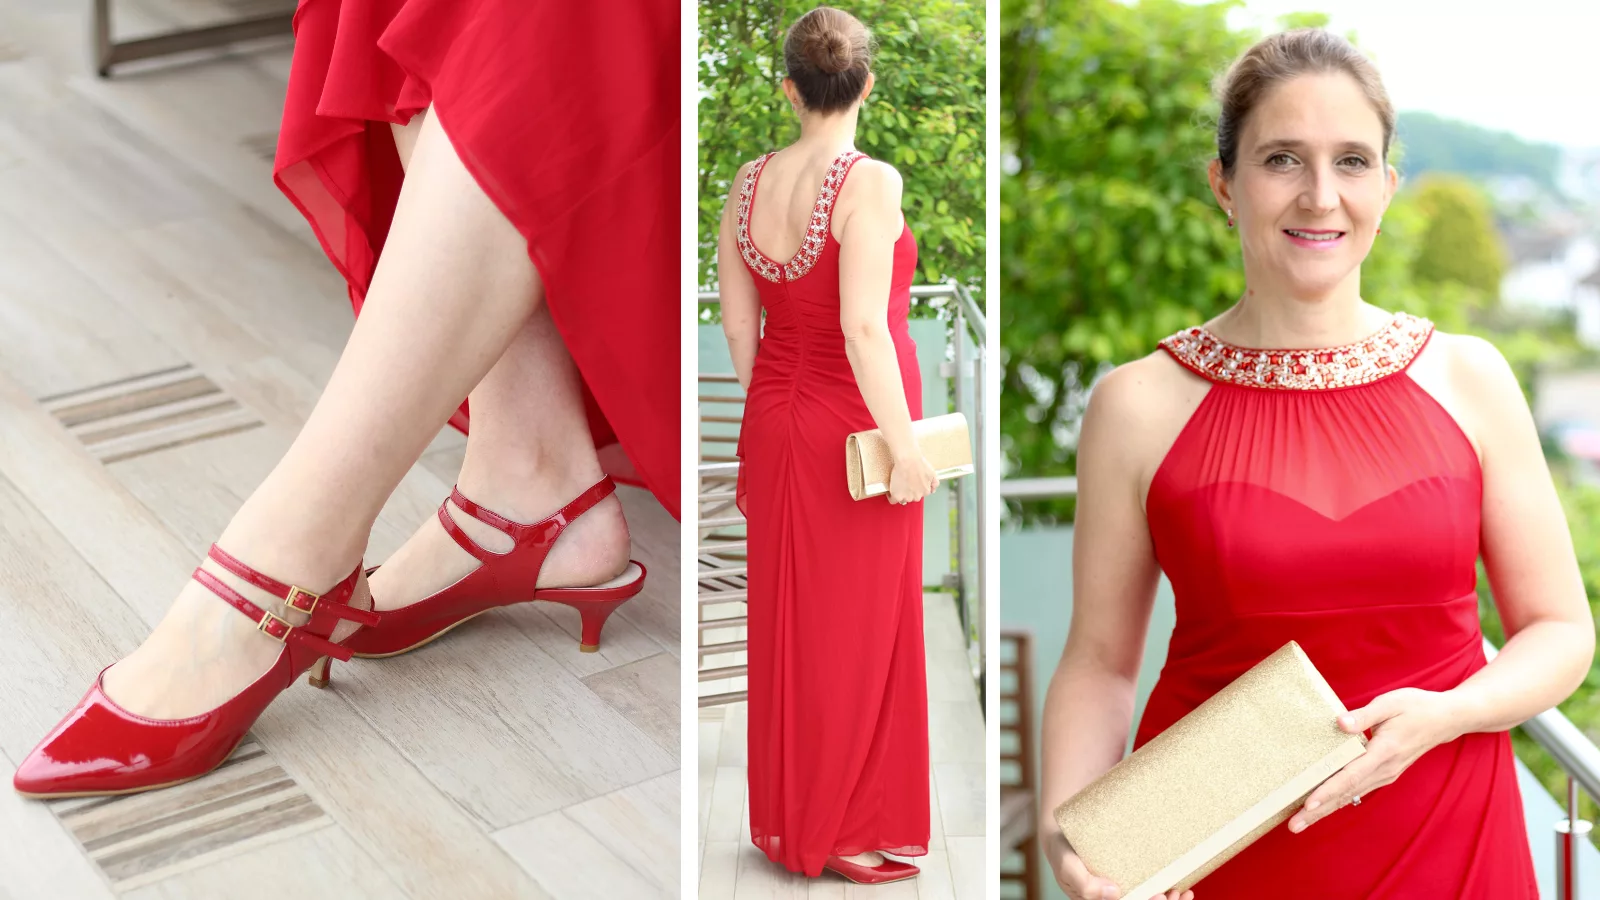 Lady in Red: Fashion Friday mit einem grandiosen Abendkleid für die Oper